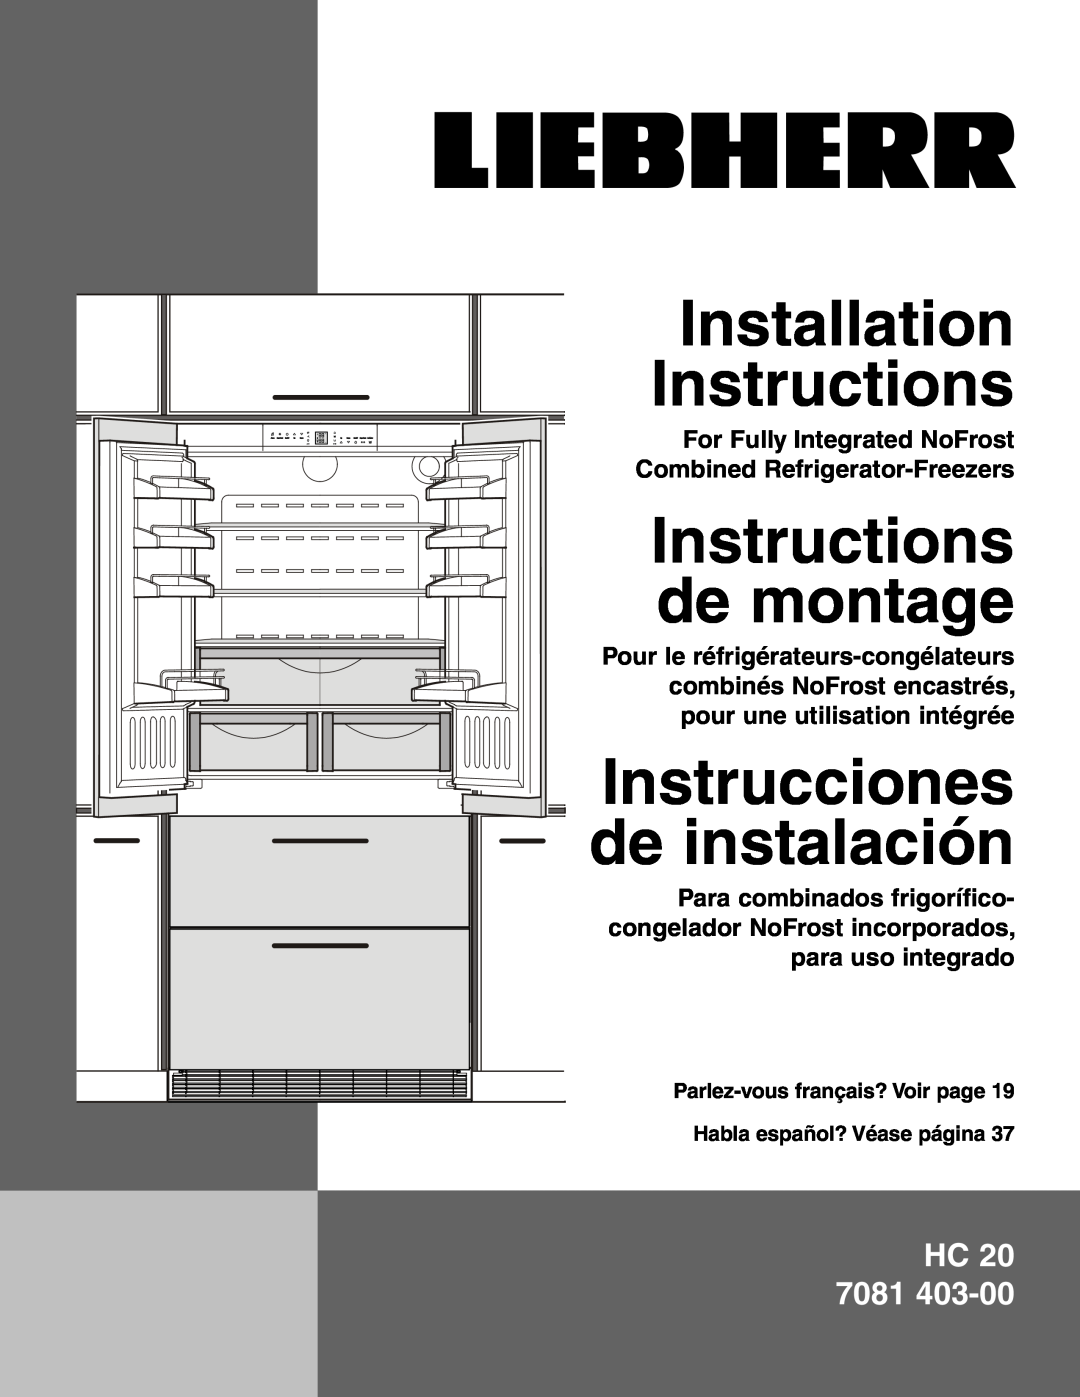 Liebherr HC 20 manual Instrucciones de instalación, For Fully Integrated NoFrost Combined Refrigerator-Freezers, Hc 